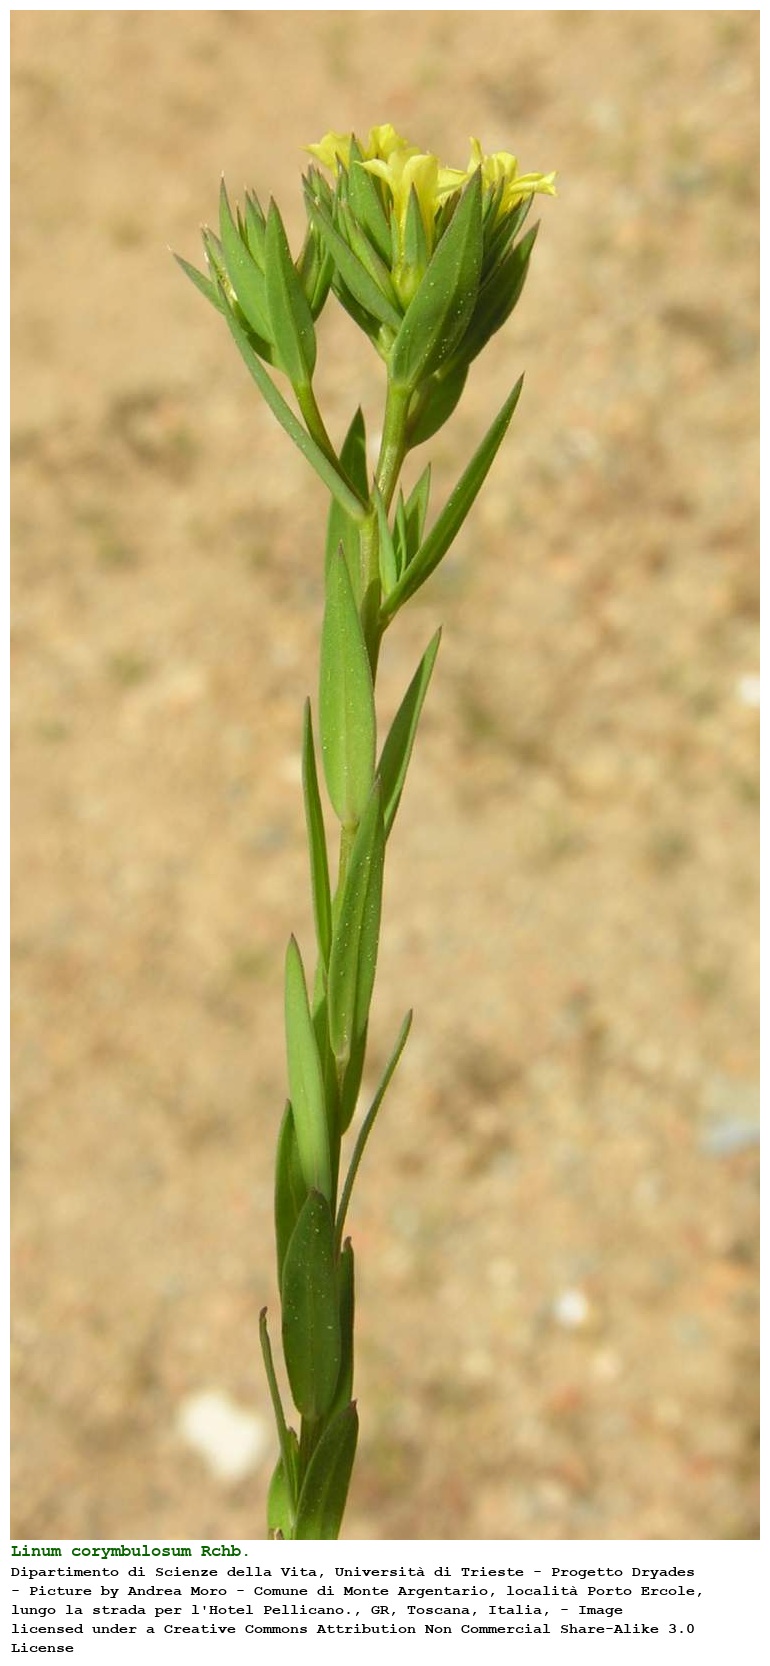 Linum corymbulosum Rchb.